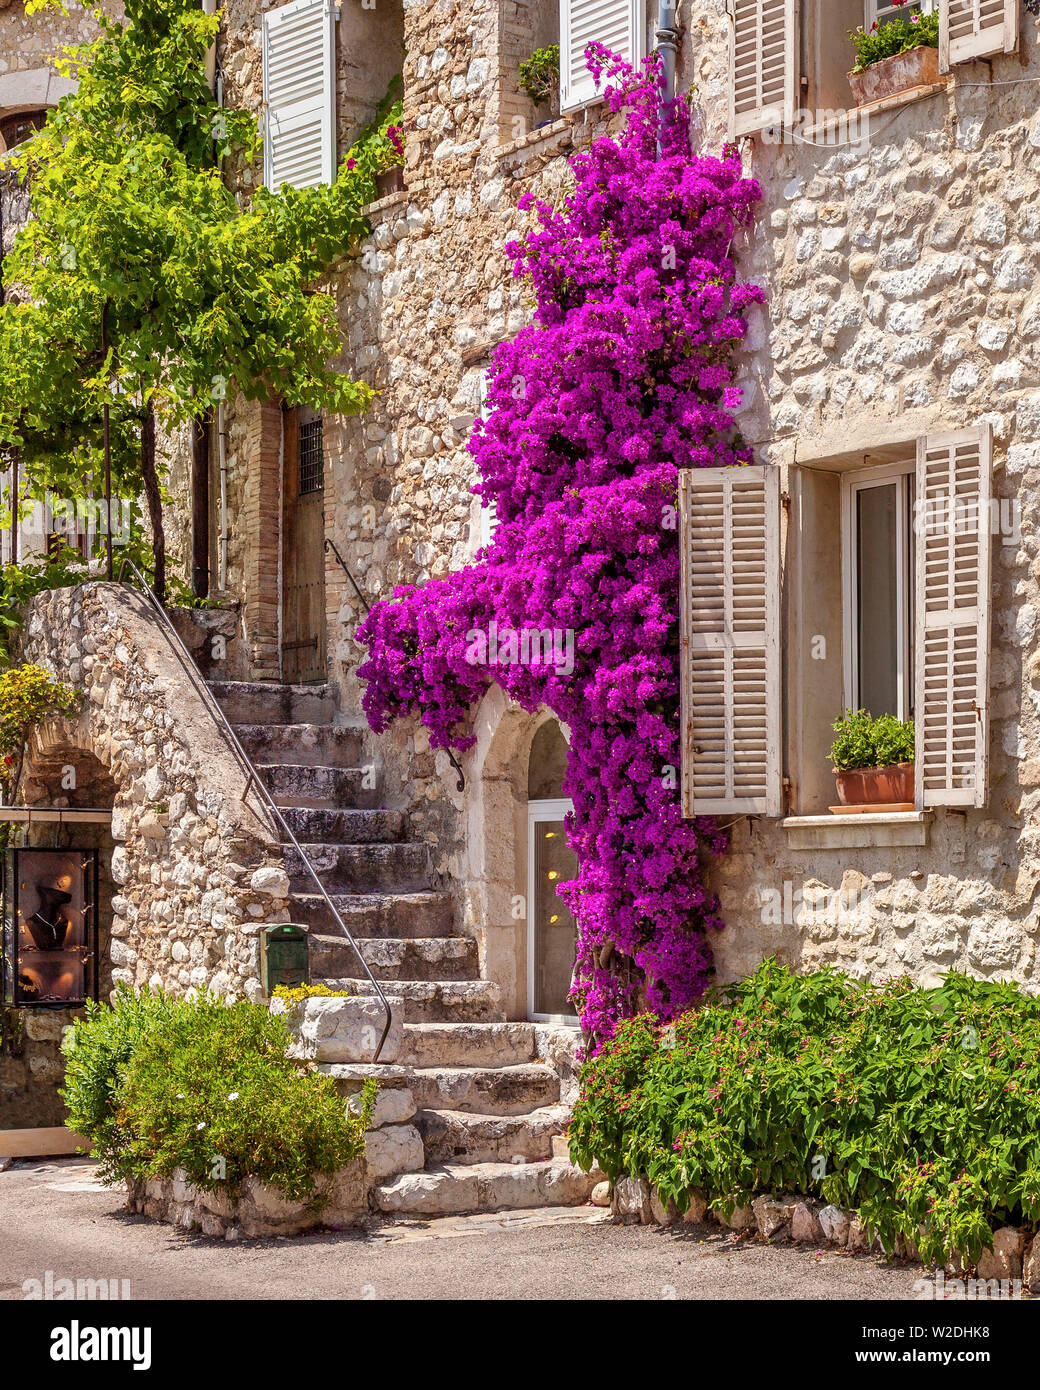 Bougainvilliers en fleurs, escaliers en pierre et l'entrée à la maison médiévale à St Paul de Vence, Provence, France Banque D'Images